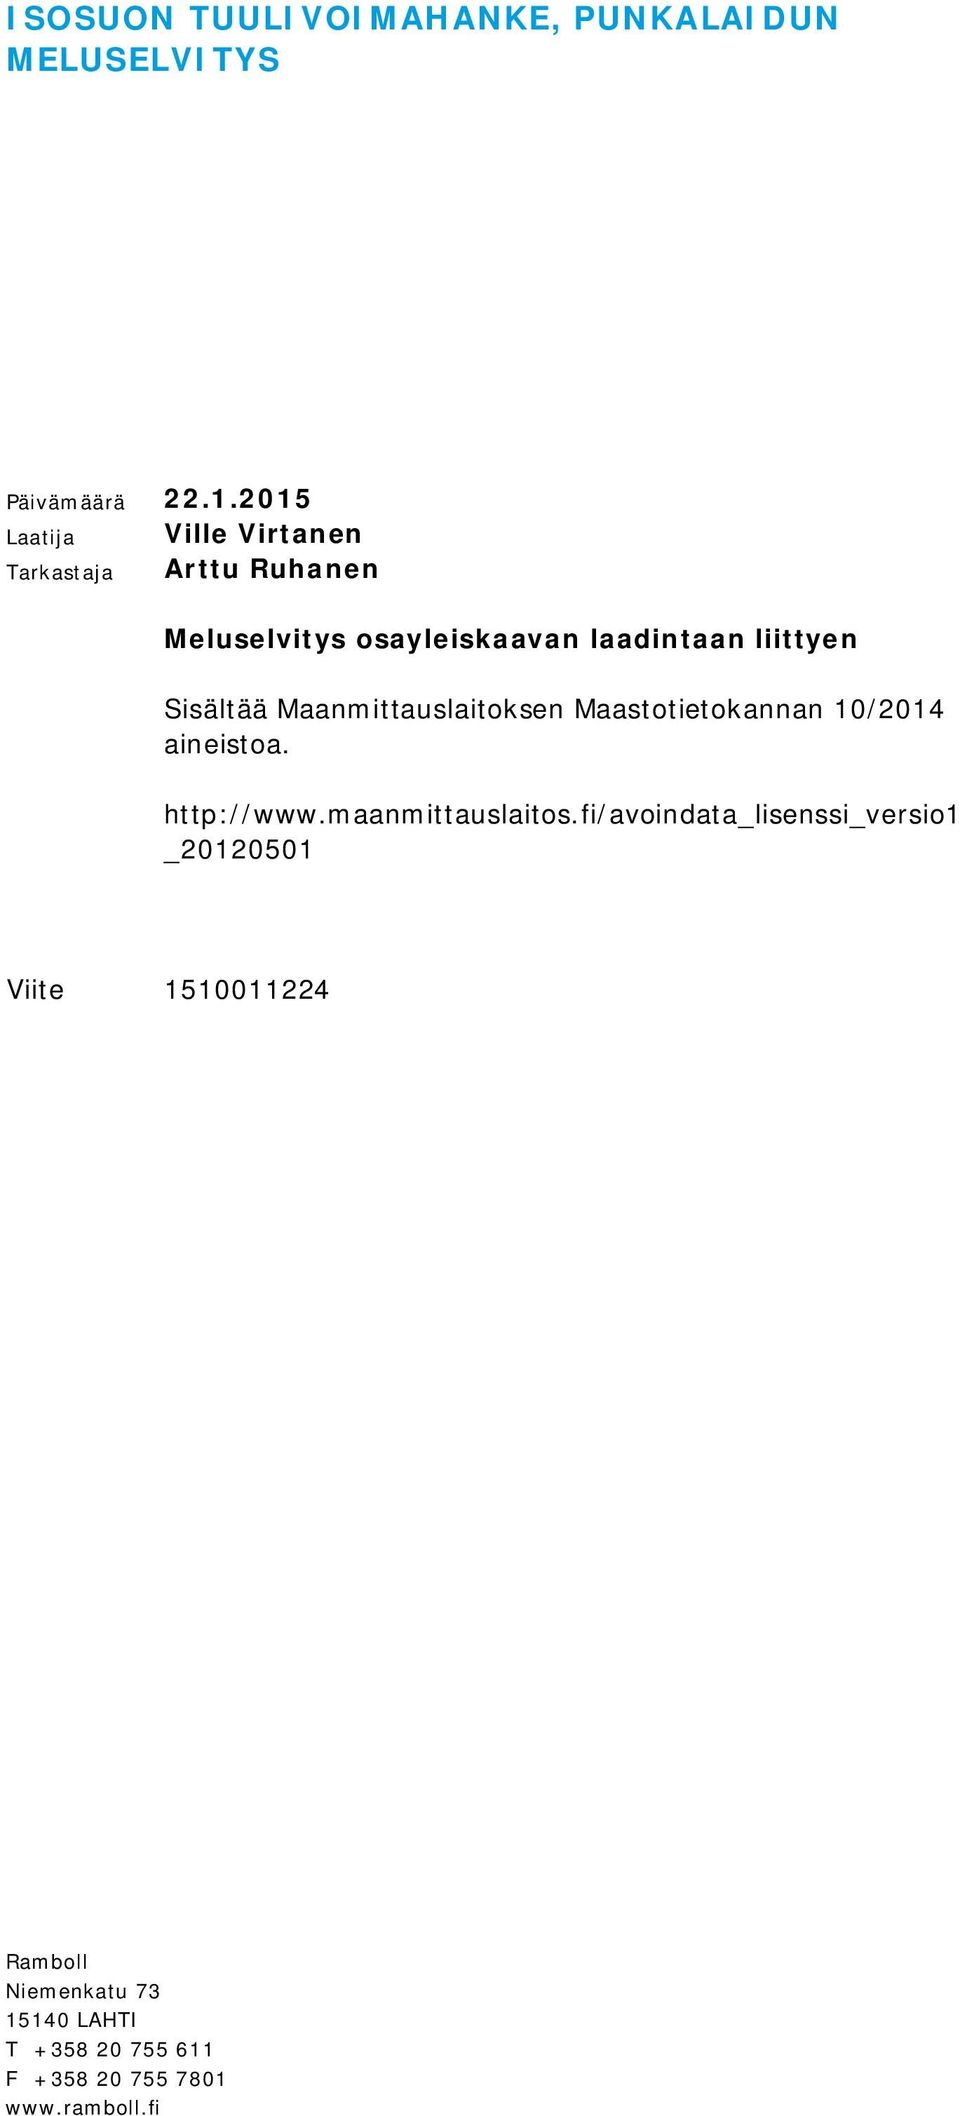 Sisältää Maanmittauslaitoksen Maastotietokannan 10/2014 aineistoa. http://www.maanmittauslaitos.